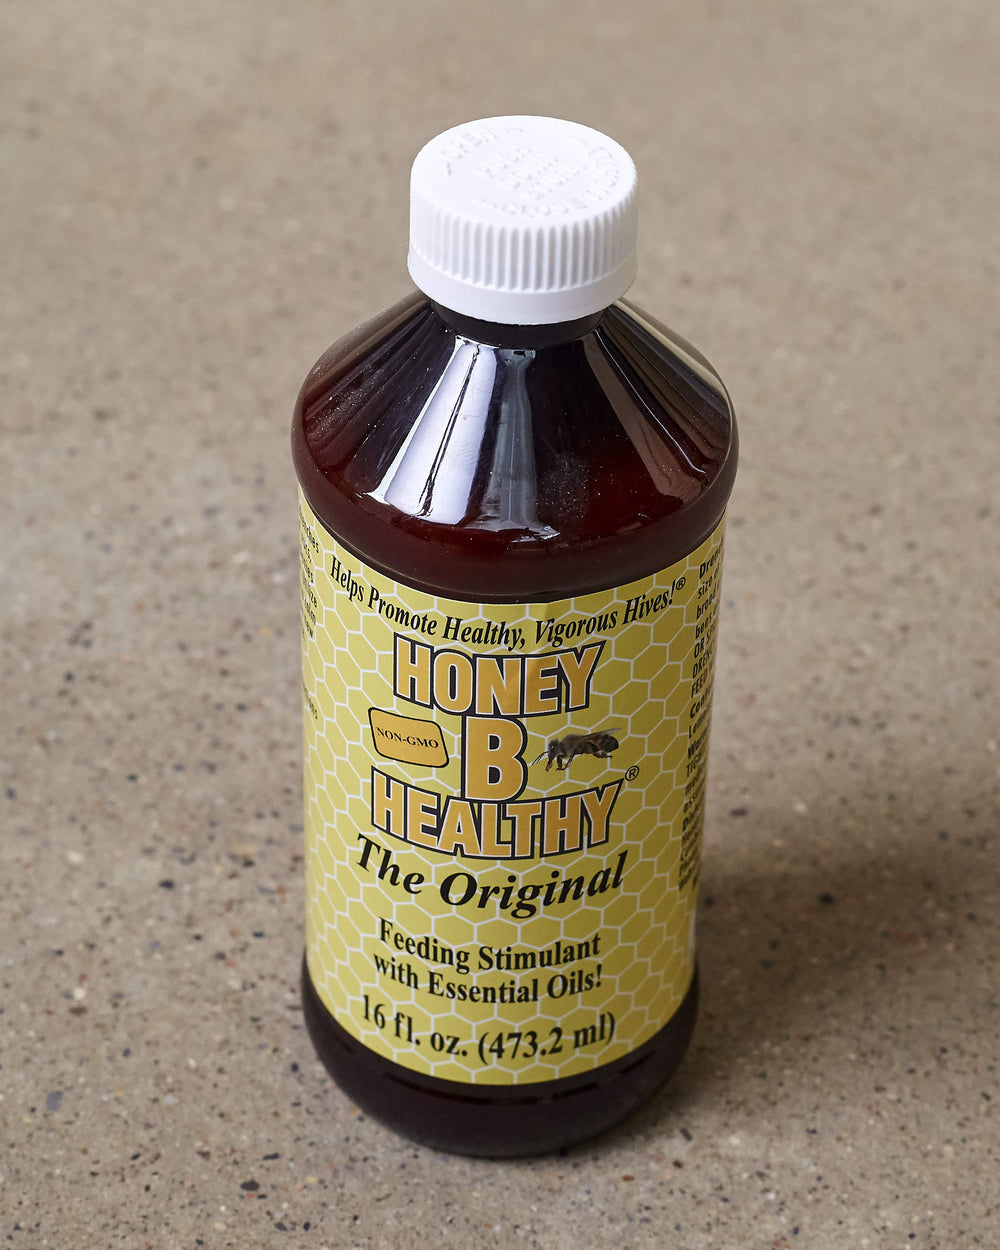 Honey B Healthy - Feeding Stimulant